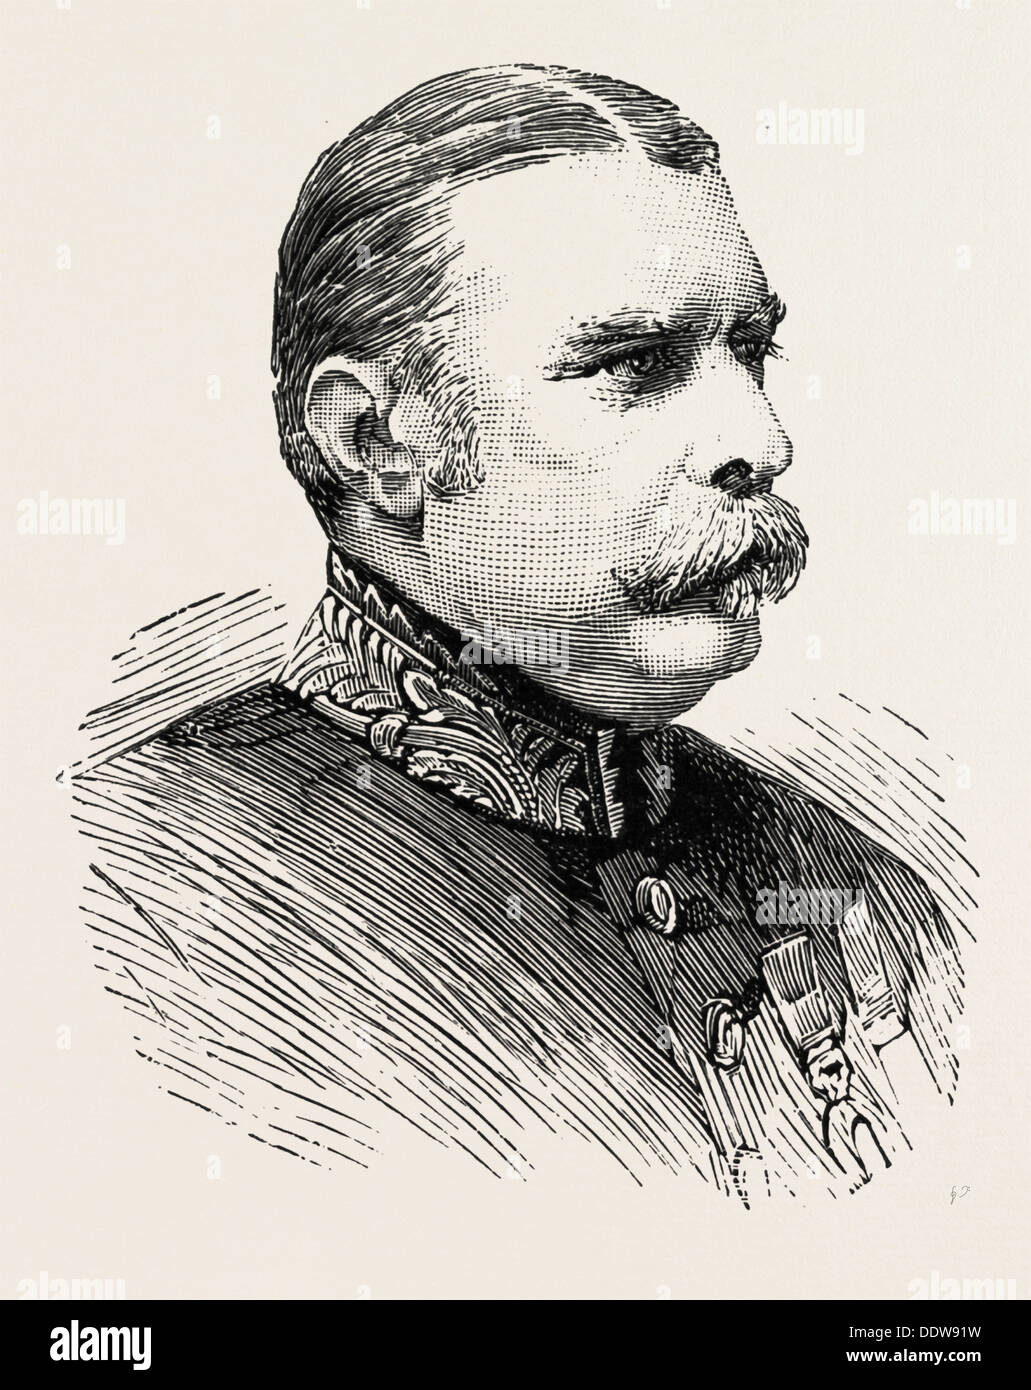 Mr A.C.S. BARKLY, C.M.G, F.R.G.S. Ex-Gouverneur von Helgoland, deutschen, dänischen, britischen, UK, 1890-Gravur Stockfoto